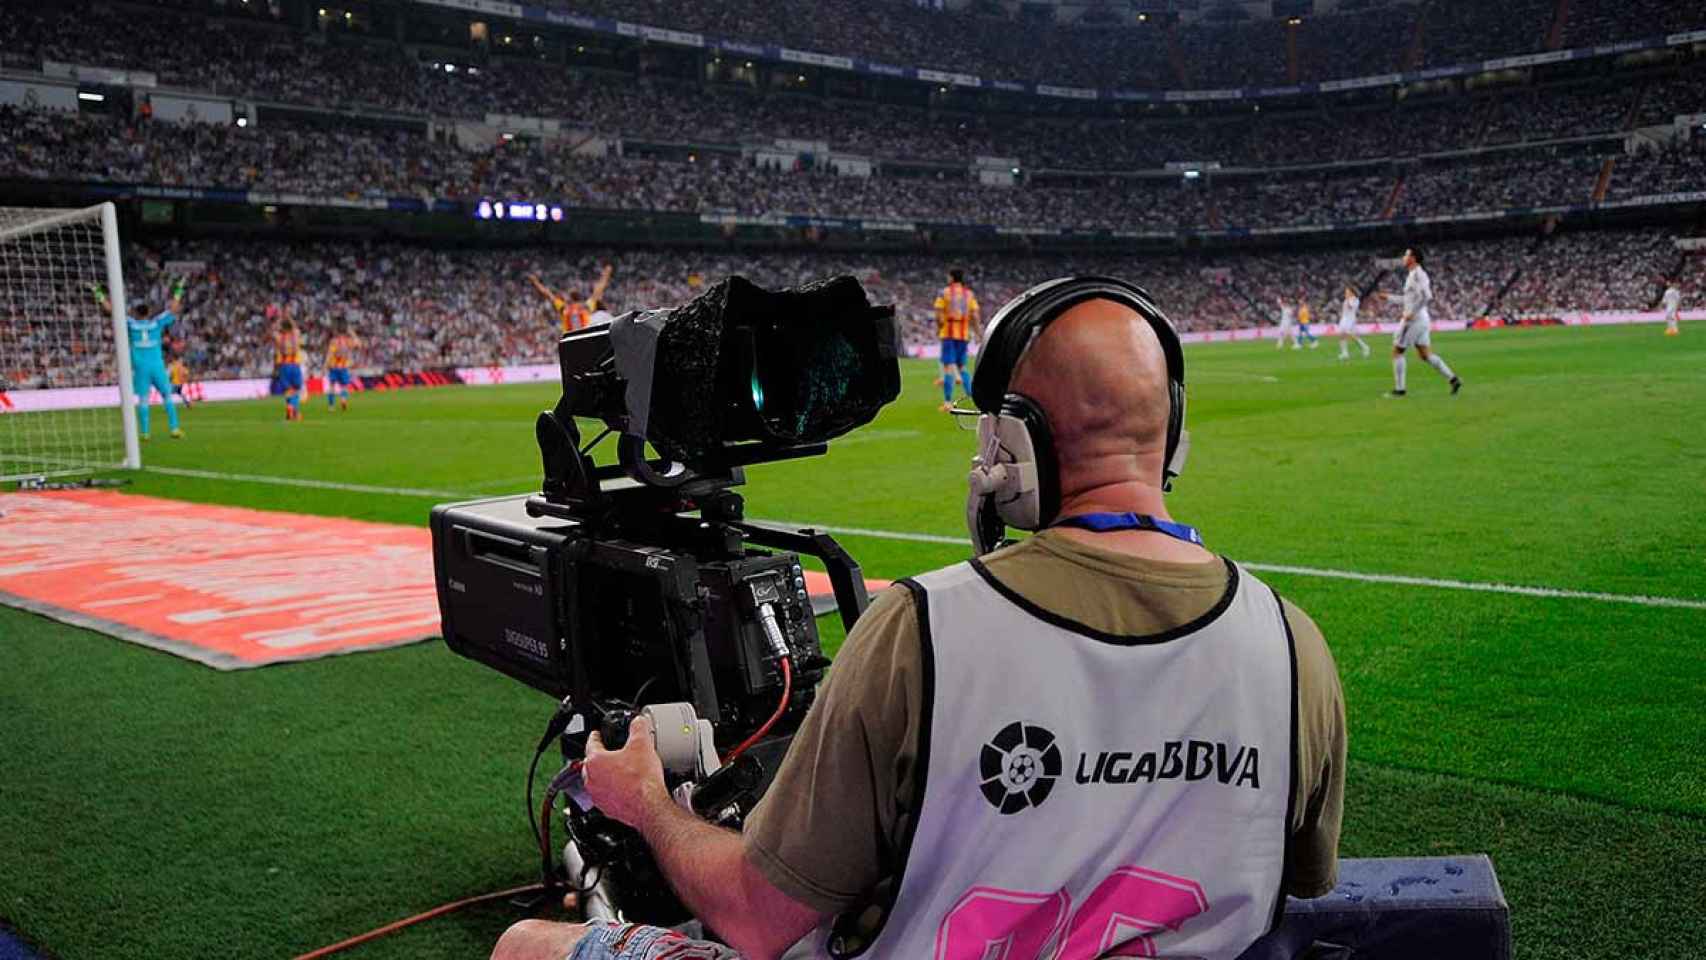 Cámaras de televisión en un partido de fútbol / La Liga